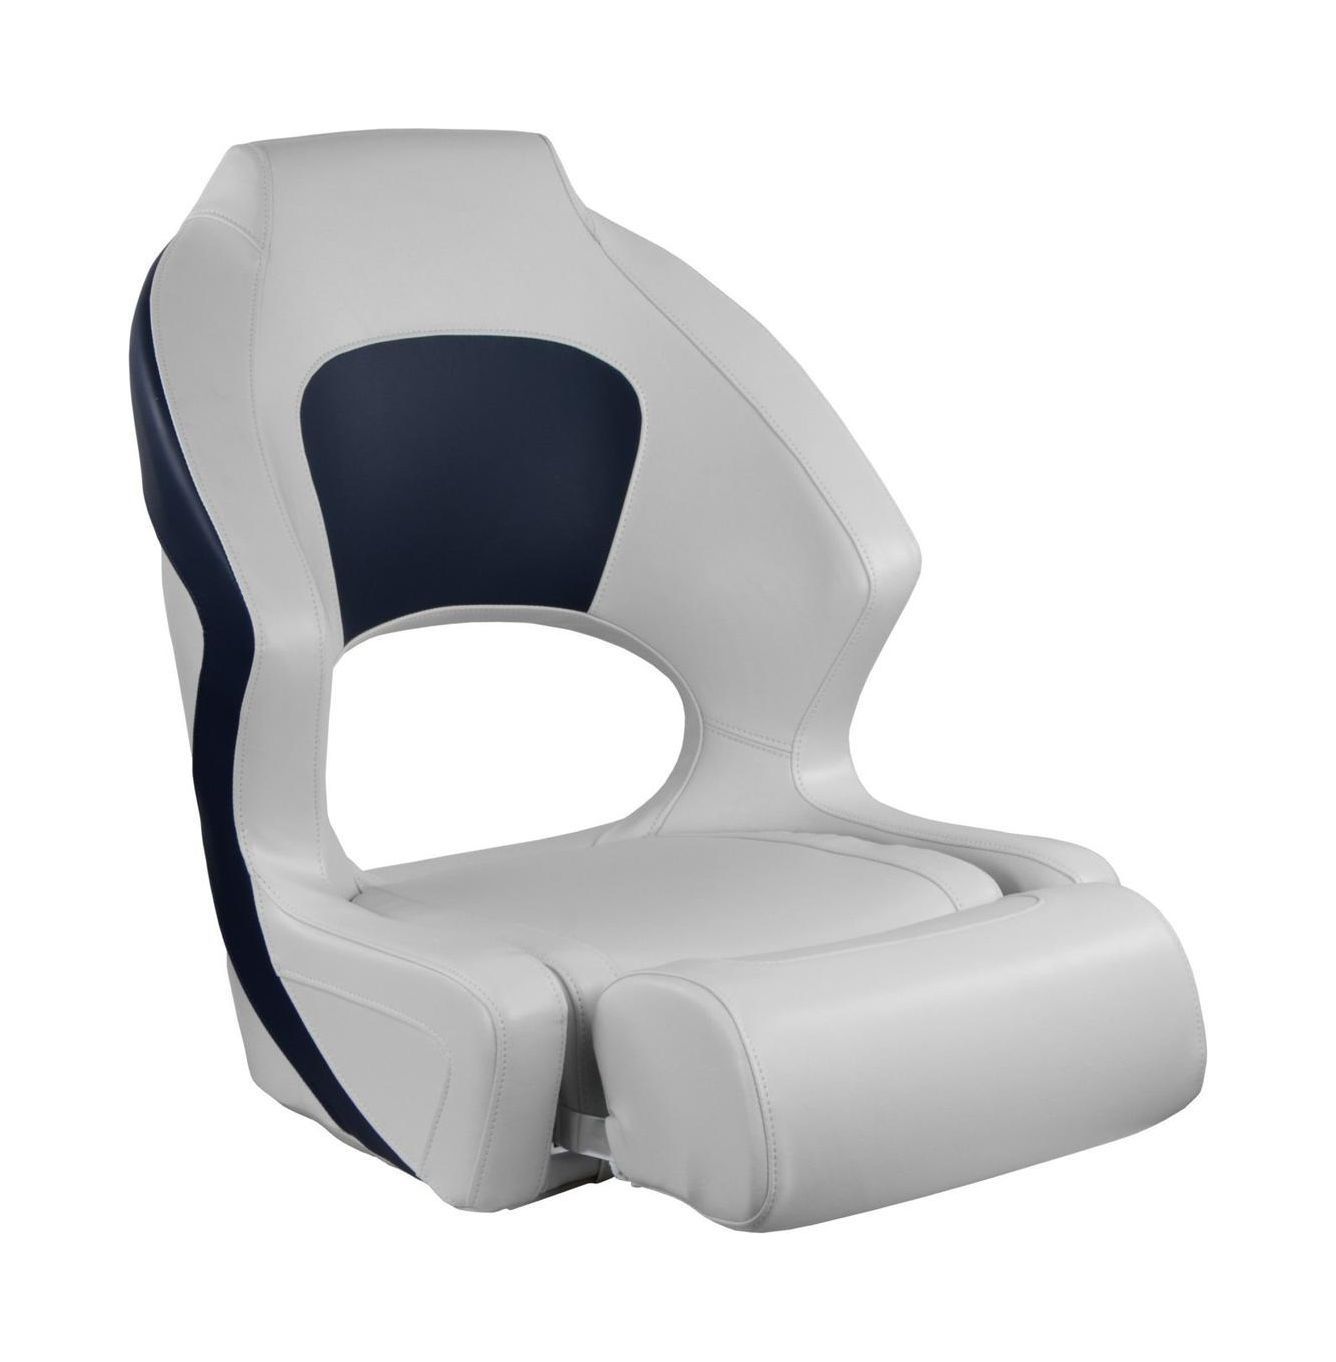 Кресло мягкое Deluxe Sport, с откидным валиком, белый/синий 1043251 кресло мягкое sportman синий белый 1001416 112